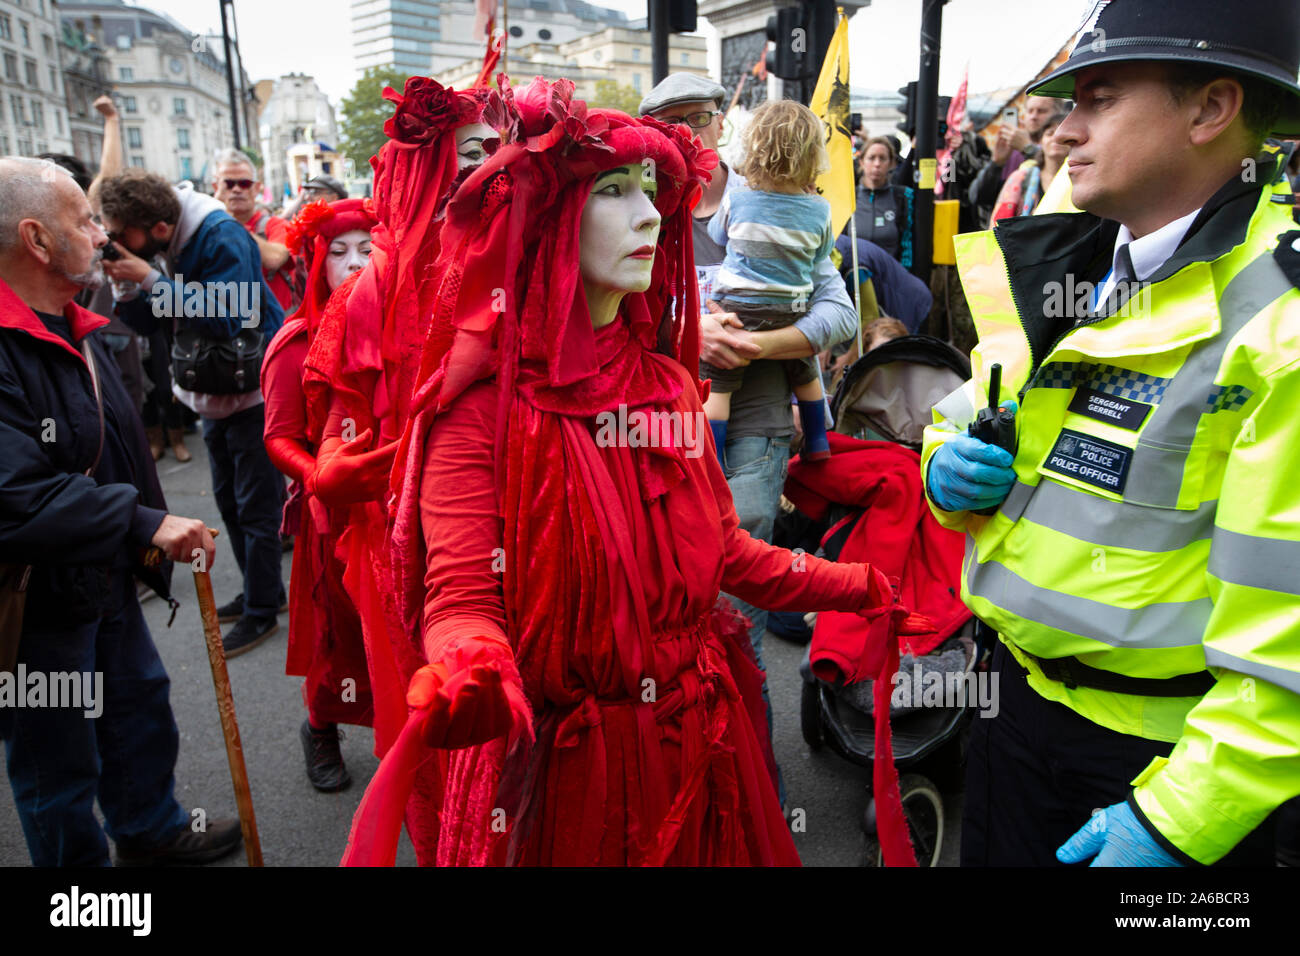 Londres, 10 octobre 2019, l'extinction en costumes rouge groupe rébellion police surround préparation de l'arrestation qui acivists ont enfermés pour une structure en bois dans la route à côté de Trafalgar Square. Banque D'Images